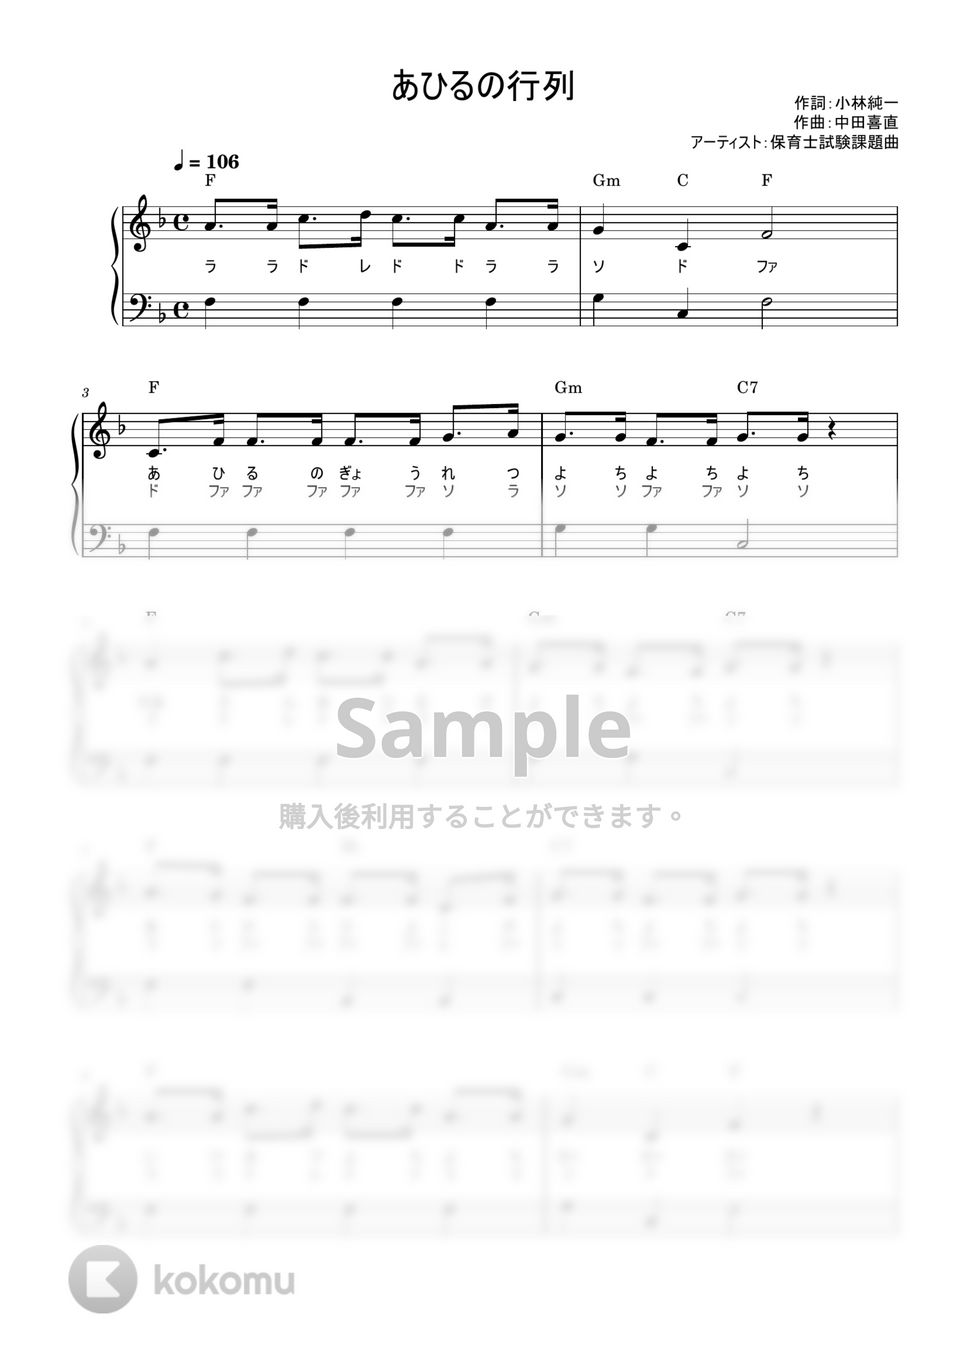 あひるの行列 (かんたん / 歌詞付き / ドレミ付き / 初心者) by piano.tokyo